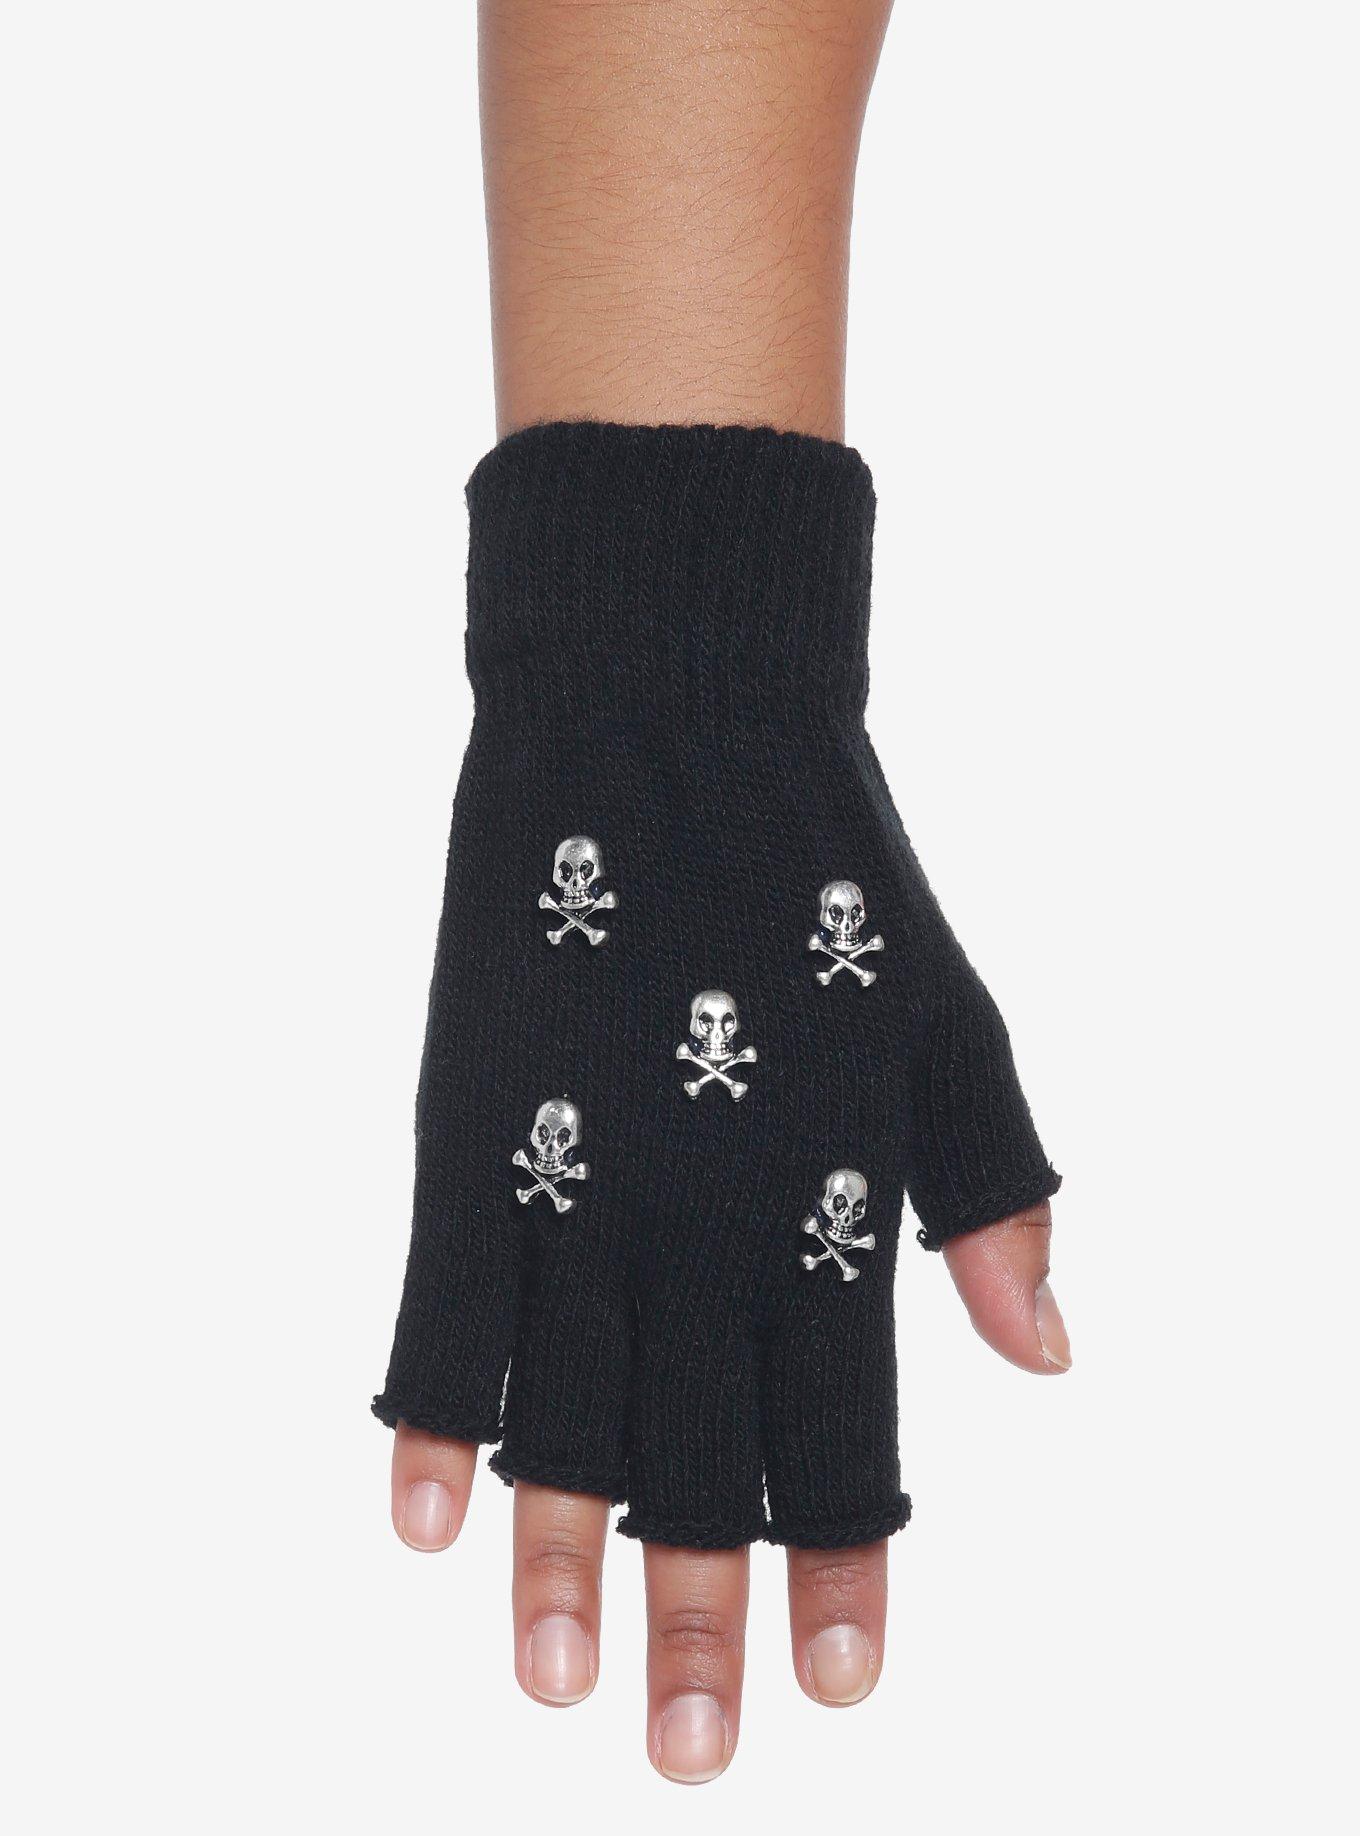 Black Skull & Crossbones Fingerless Gloves, , alternate